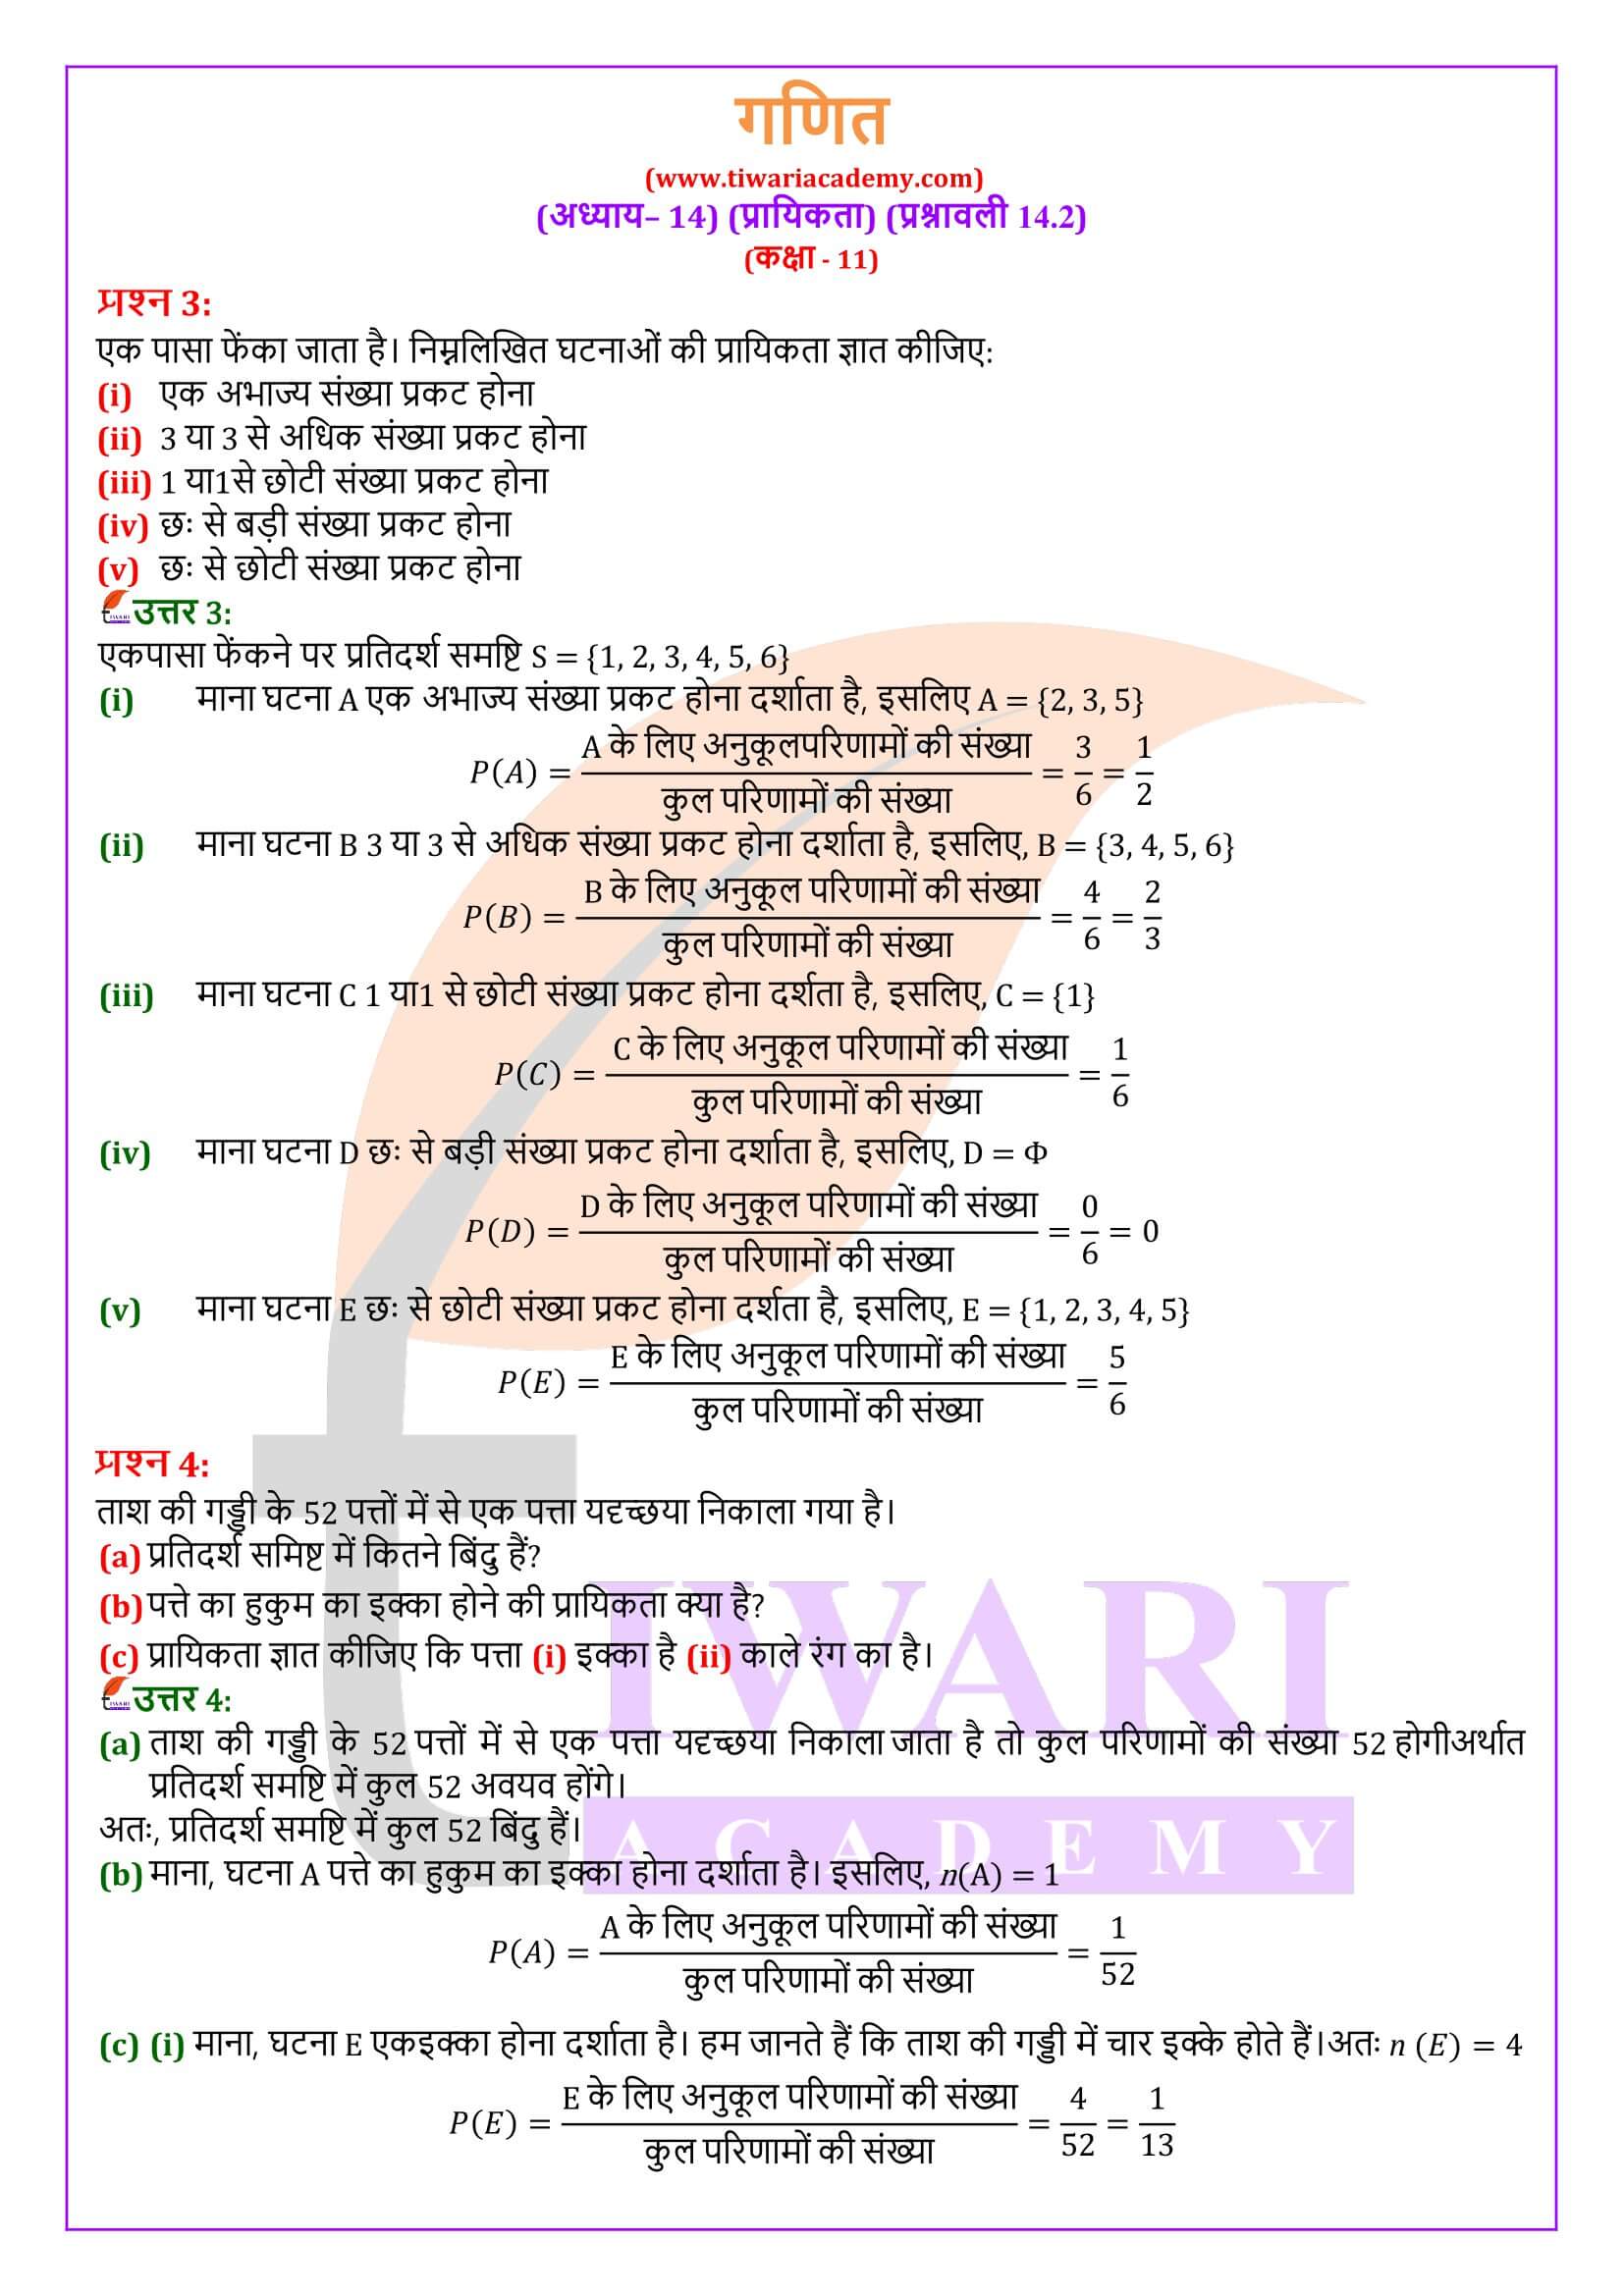 एनसीईआरटी समाधान कक्षा 11 गणित प्रश्नावली 14.2 हिंदी में हल